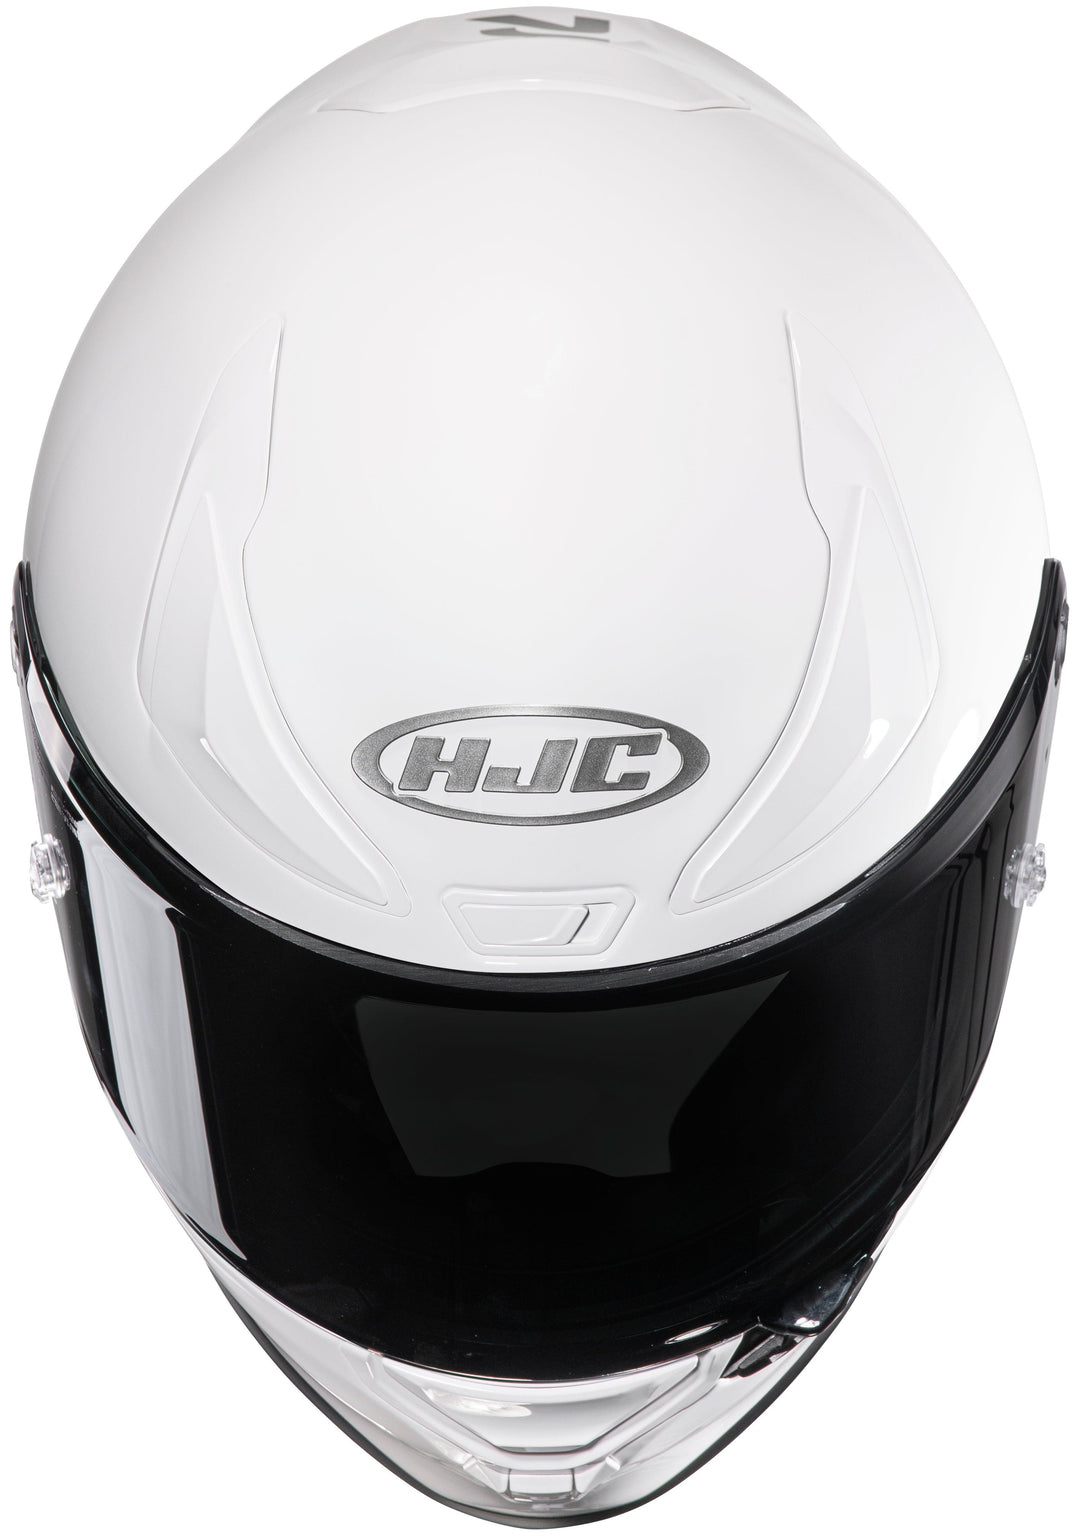 HJC RPHA 1N Helmet - White - Motor Psycho Sport